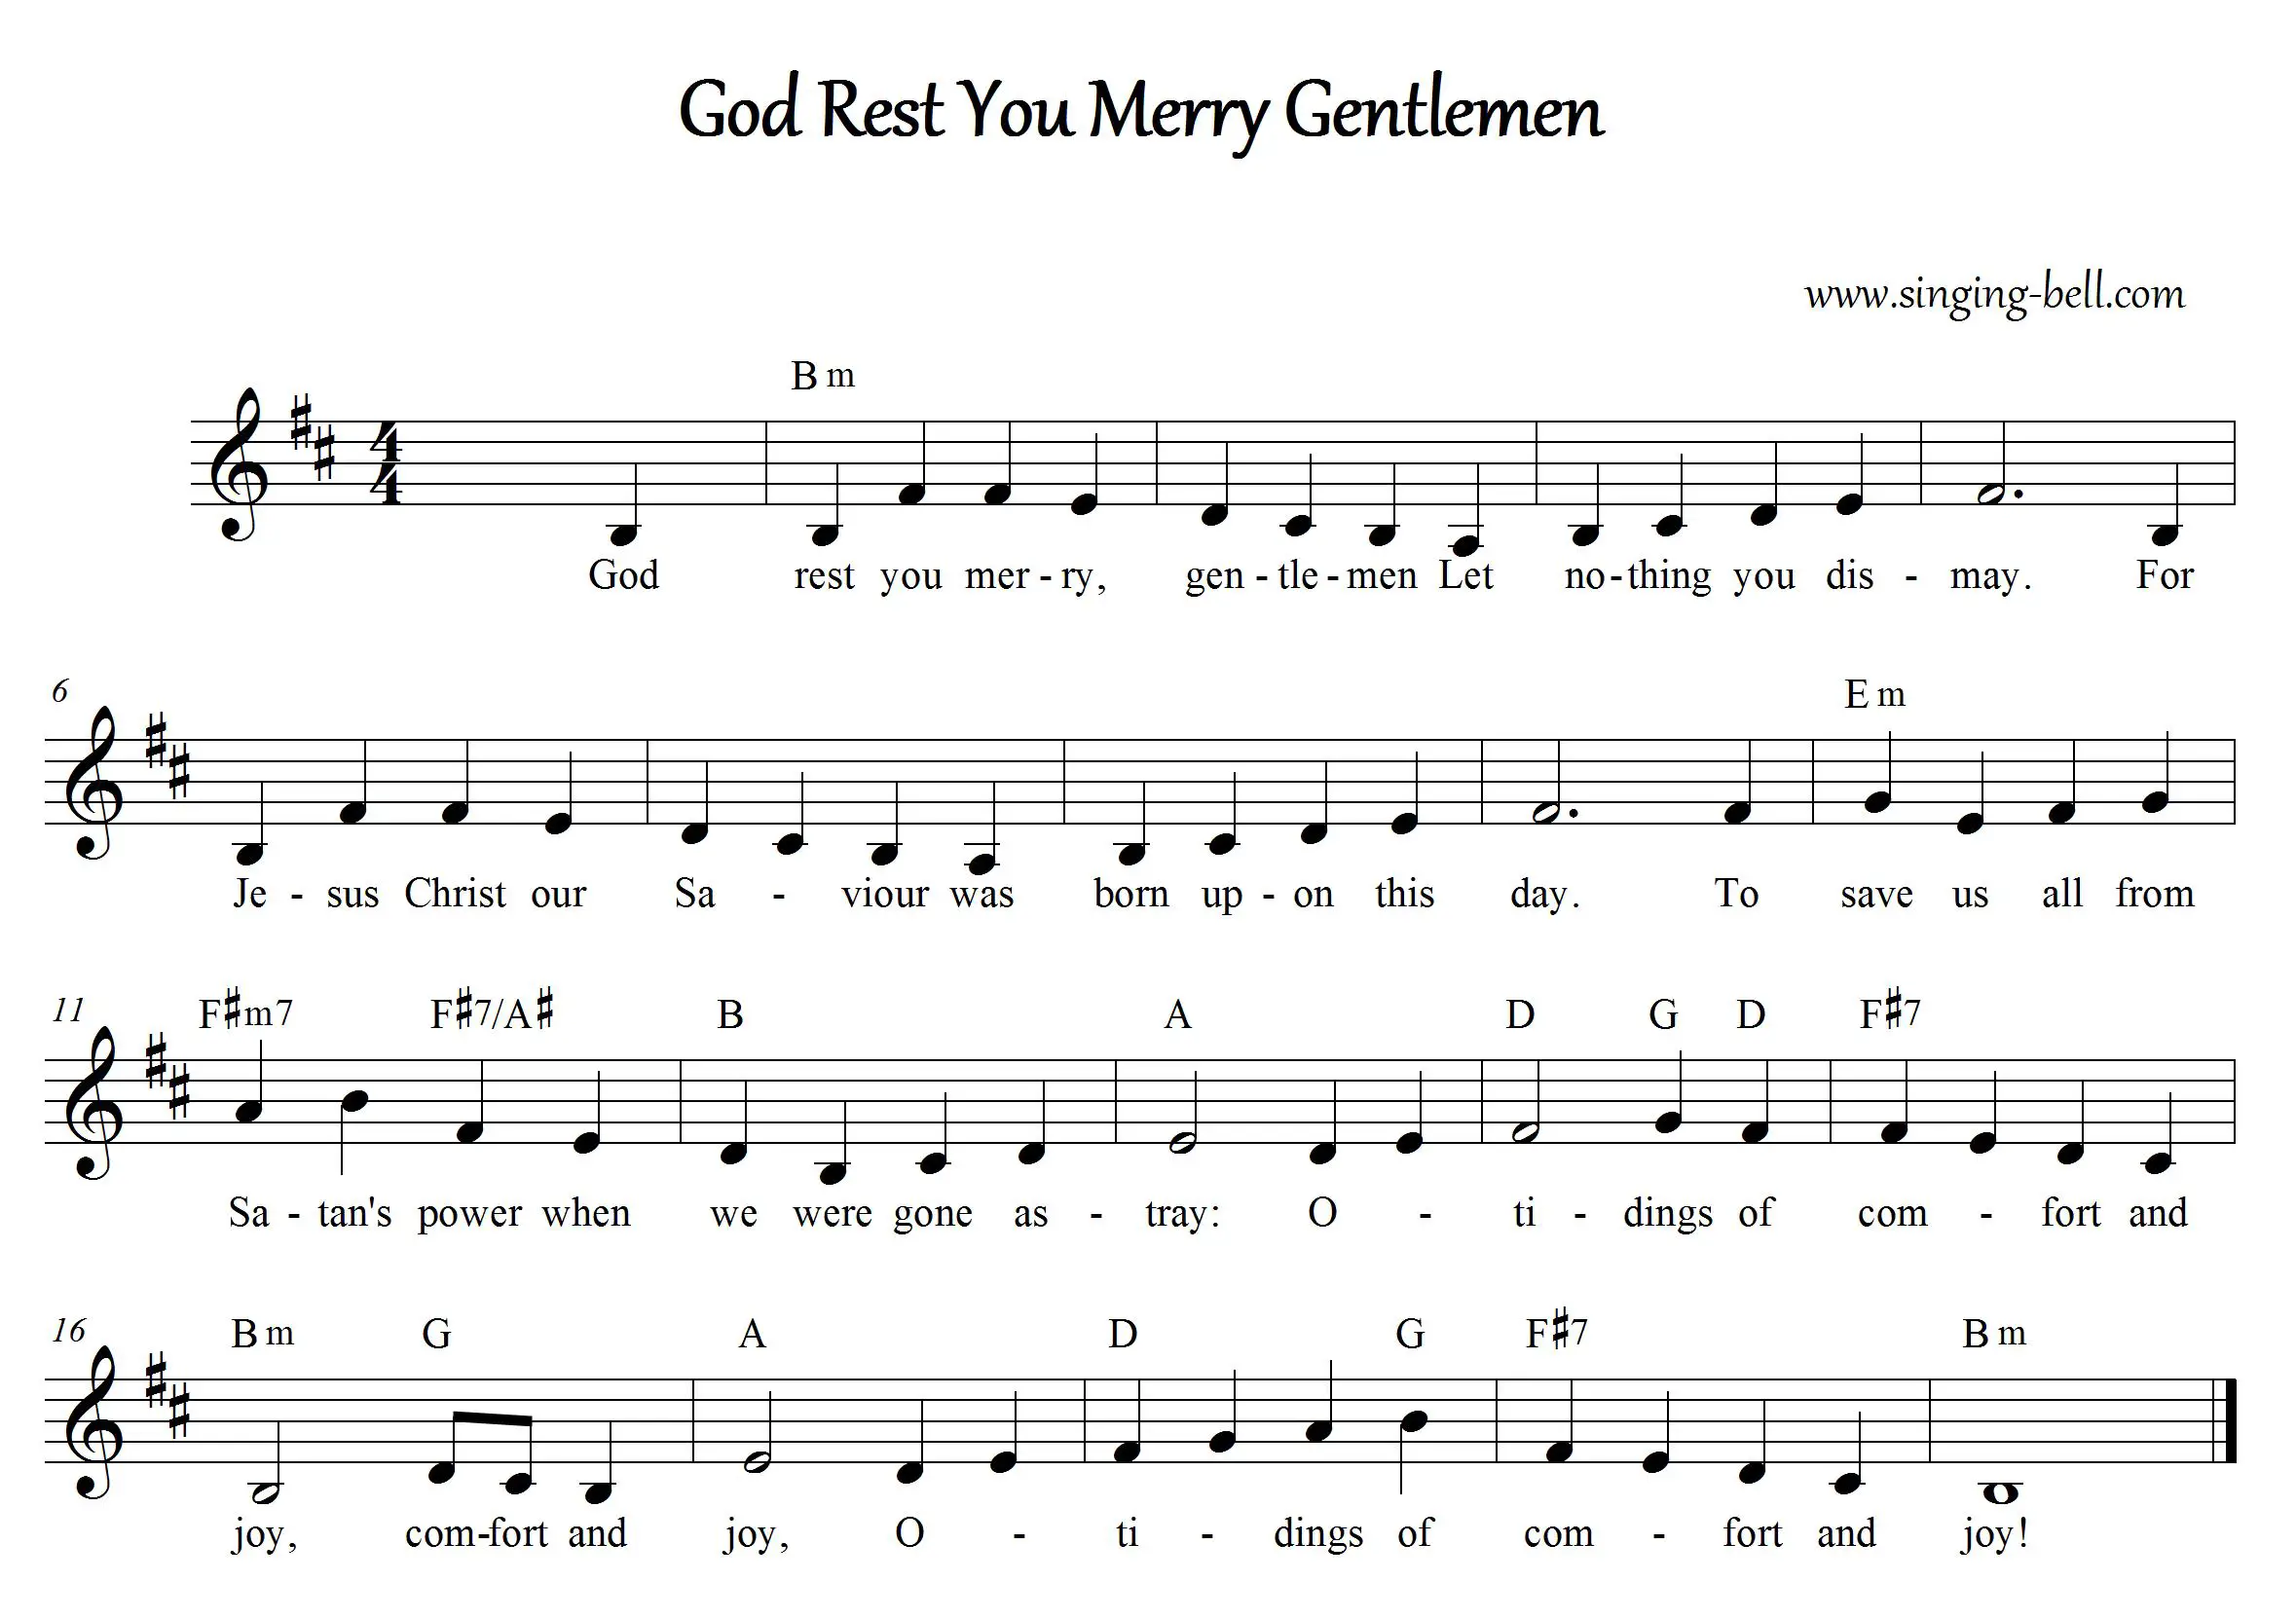 Christmas Carol Sheet Music | 30 Free Scores to Download - Part 2